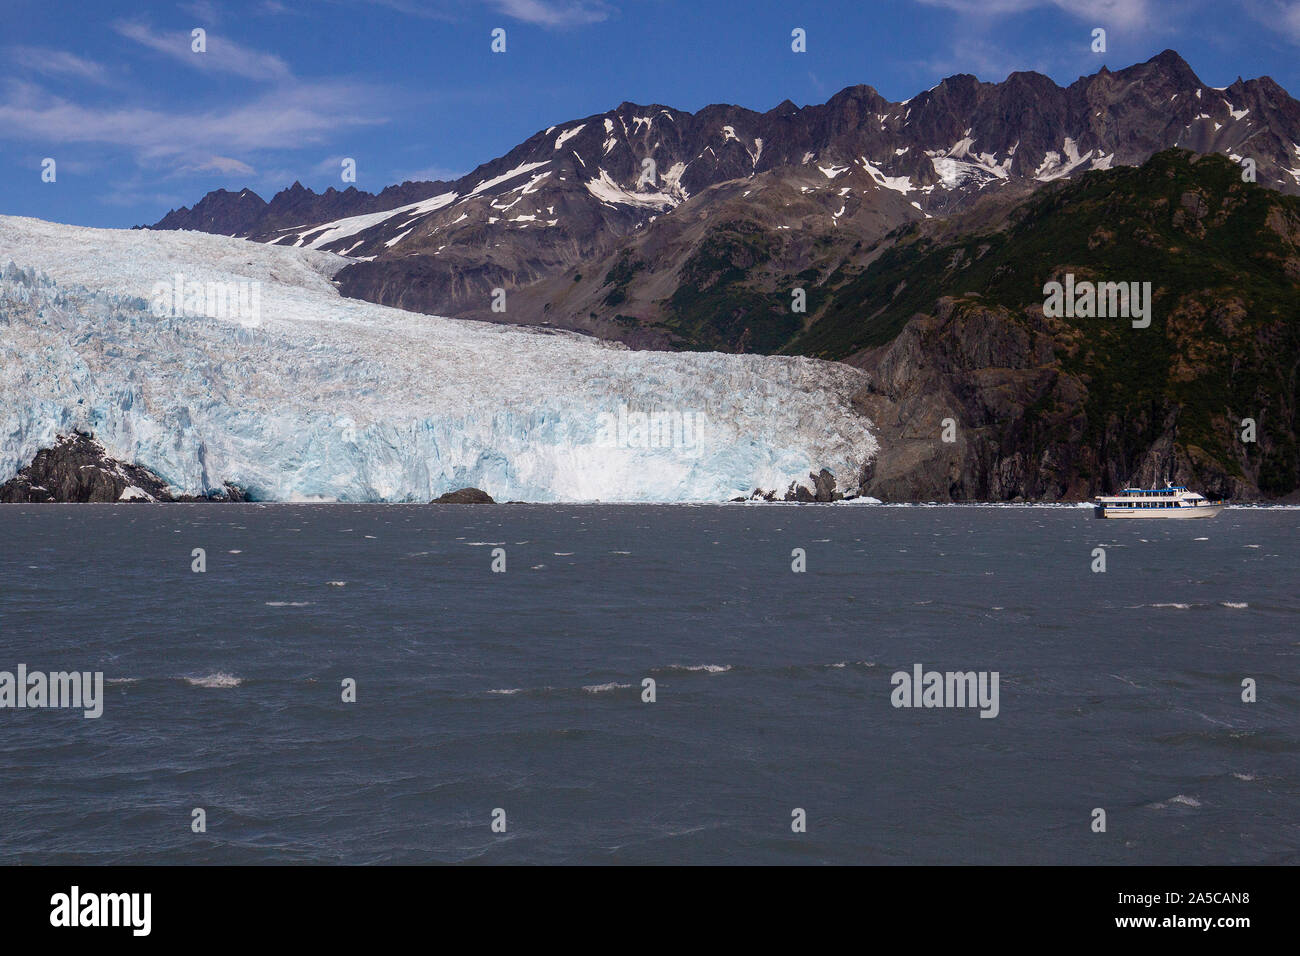 Teil des Kenai Fjords National Park, Aialik Gletscher ist ein Gletscher in der Kenai Halbinsel Borough in Alaska in der Nähe von Seward. Stockfoto